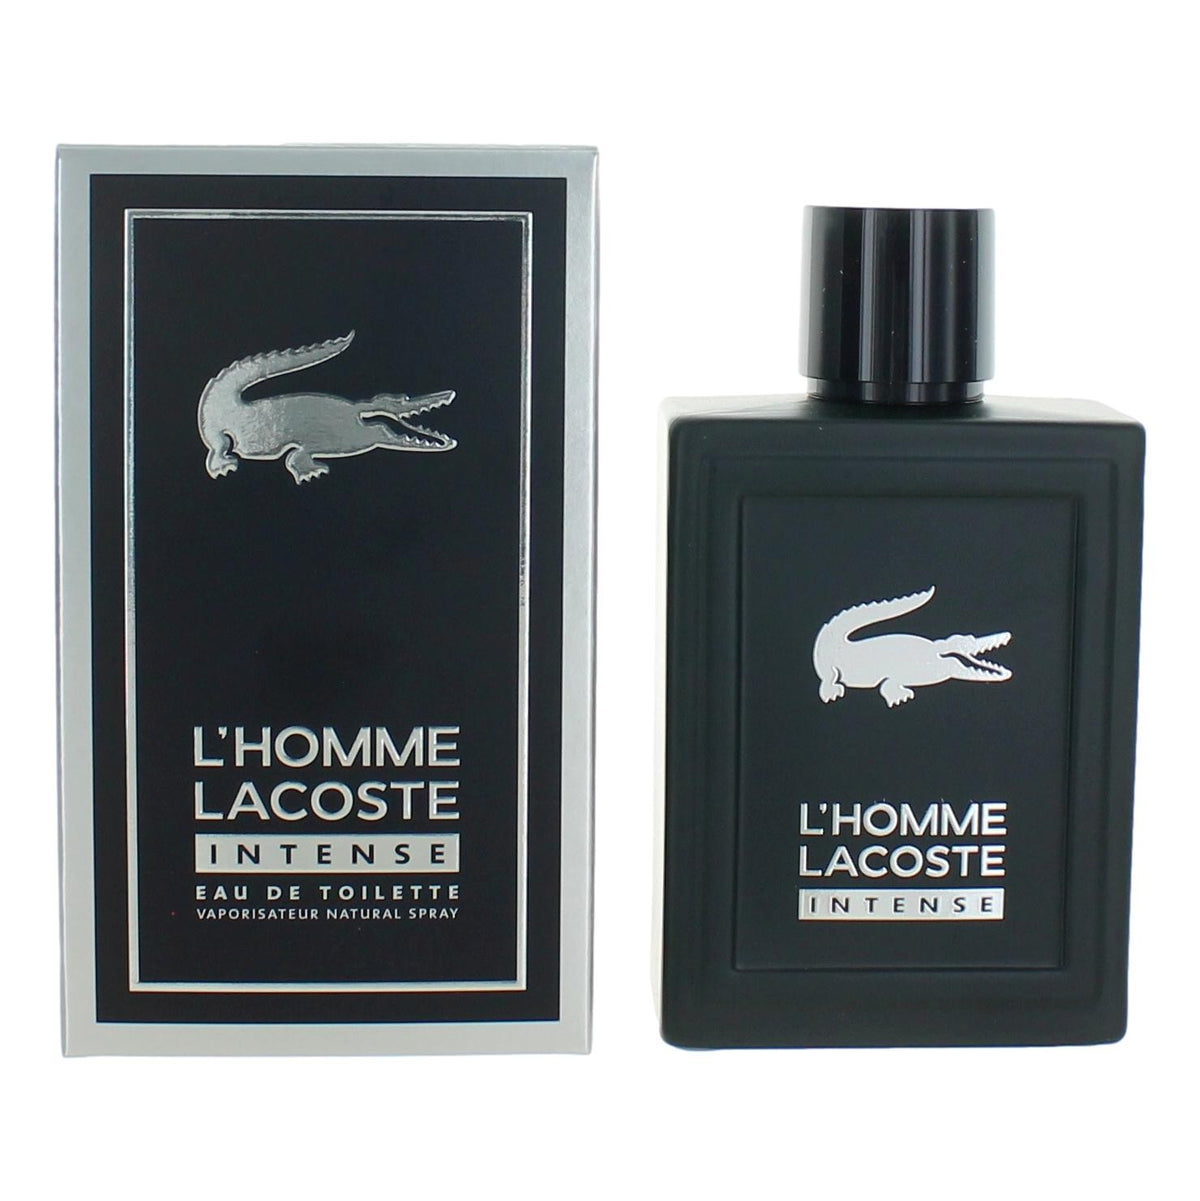 L'Homme Lacoste Intense by Lacoste, 3.3 oz Eau De Toilette Spray for Men